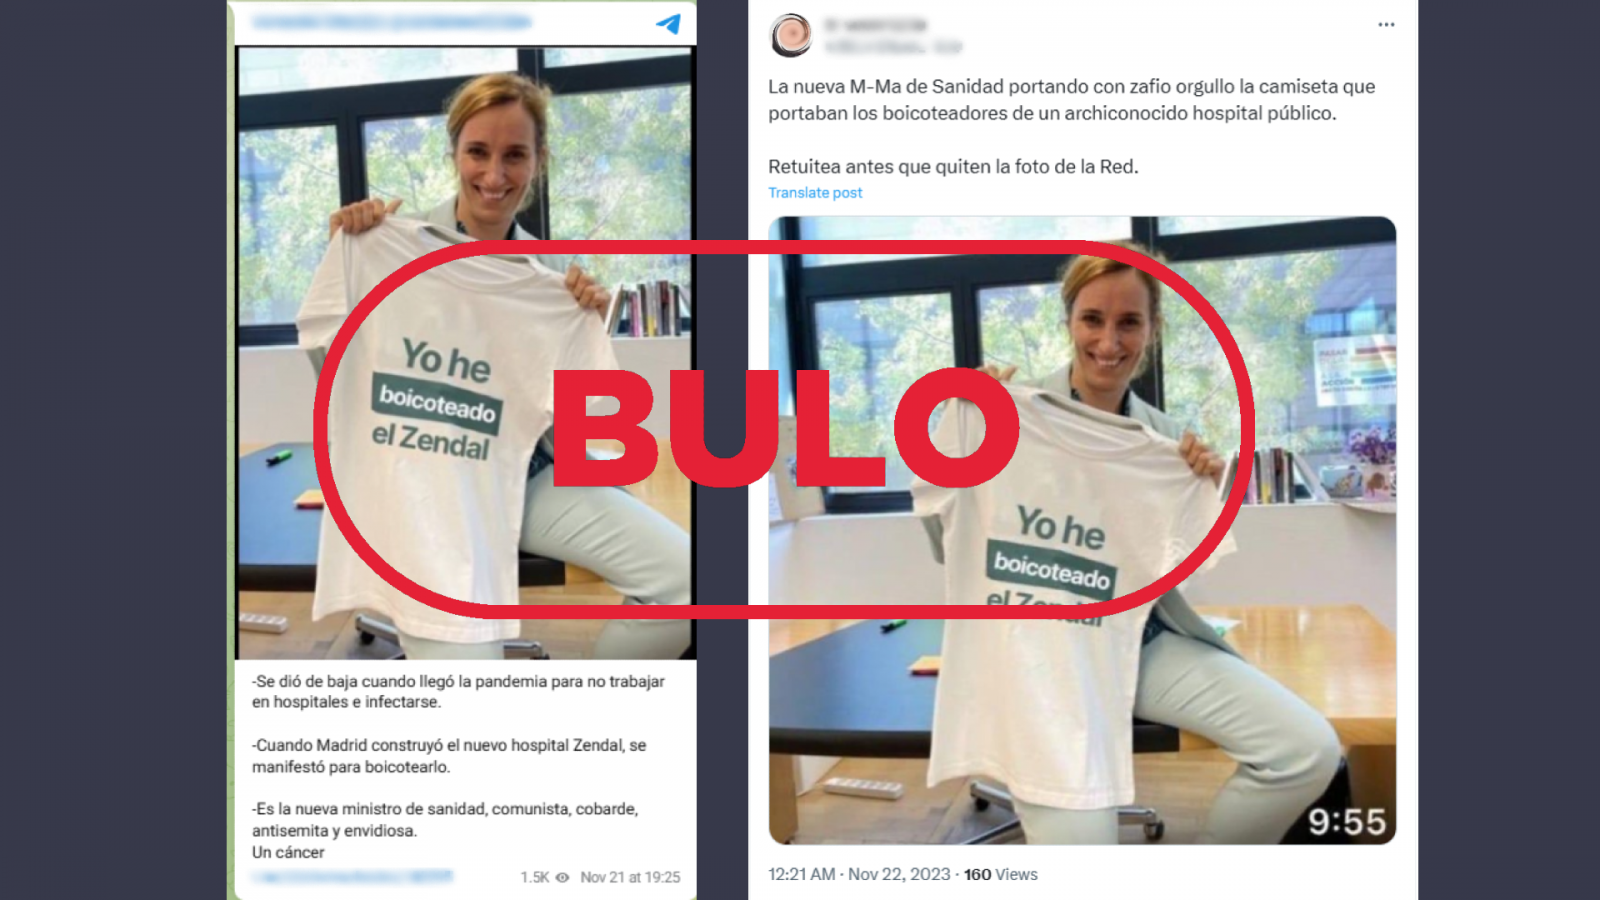 Esta foto de Mónica García con una camiseta que dice 'yo he boicoteado el Zendal' es falsa, con el sello Bulo en rojo